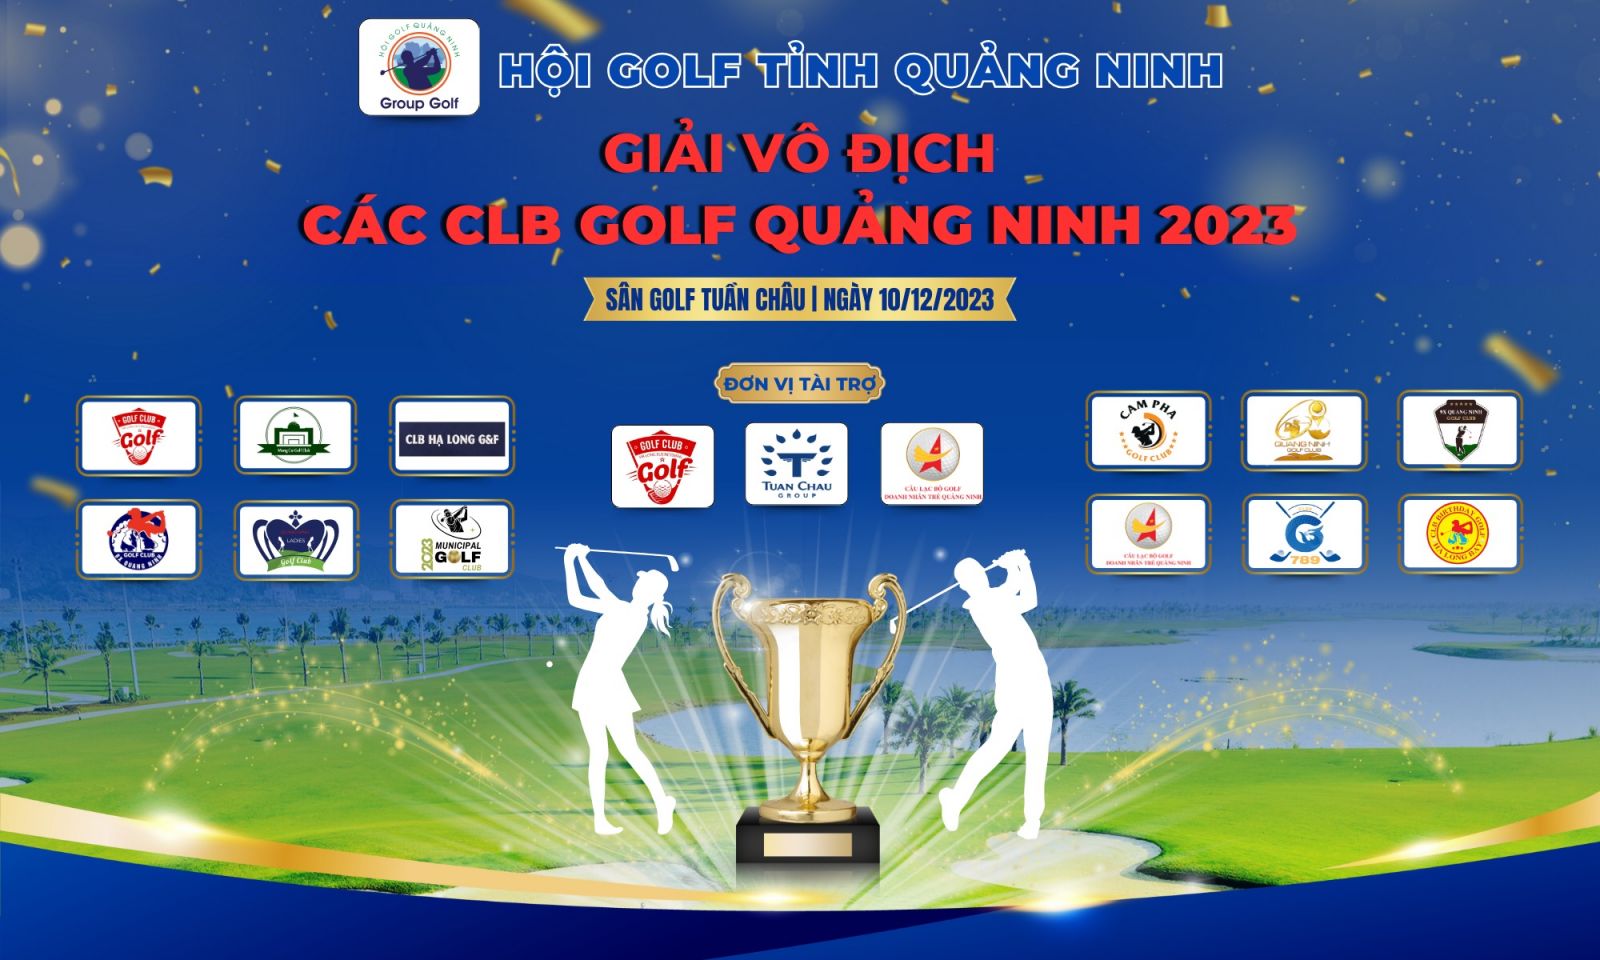 12 CLB Tham Dự Giải Vô Địch Các Câu Lạc Bộ Golf Quảng Ninh 2023 